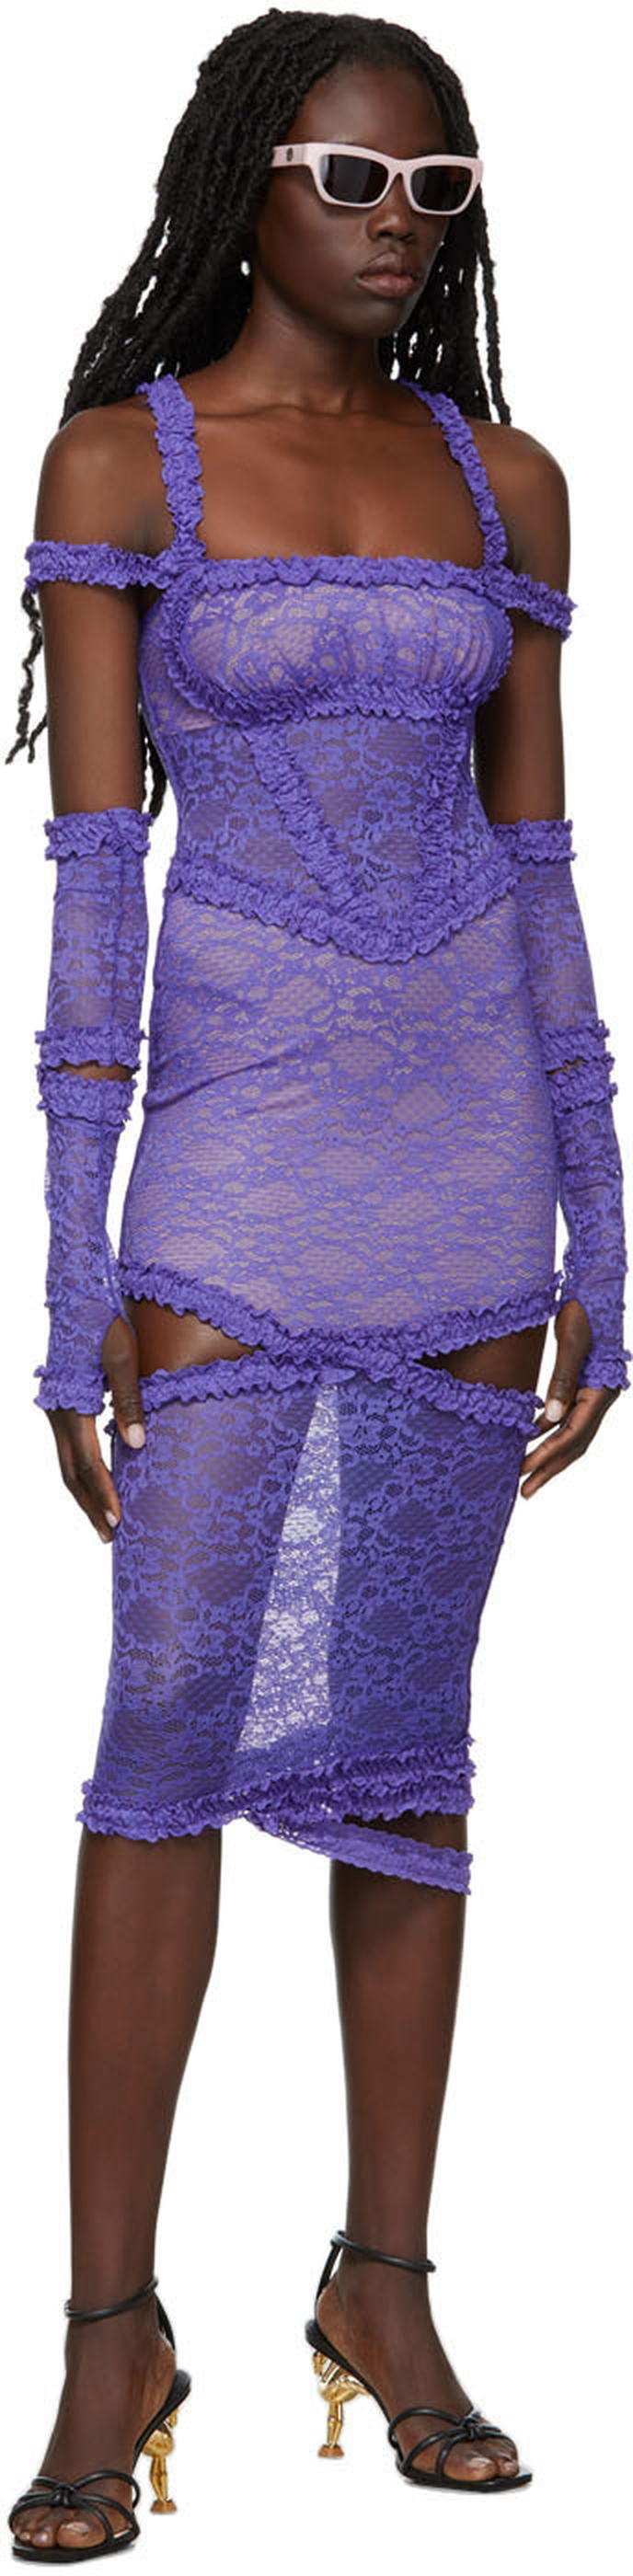 Nodress Purple Lace Frilled Mesh Dress Nodress